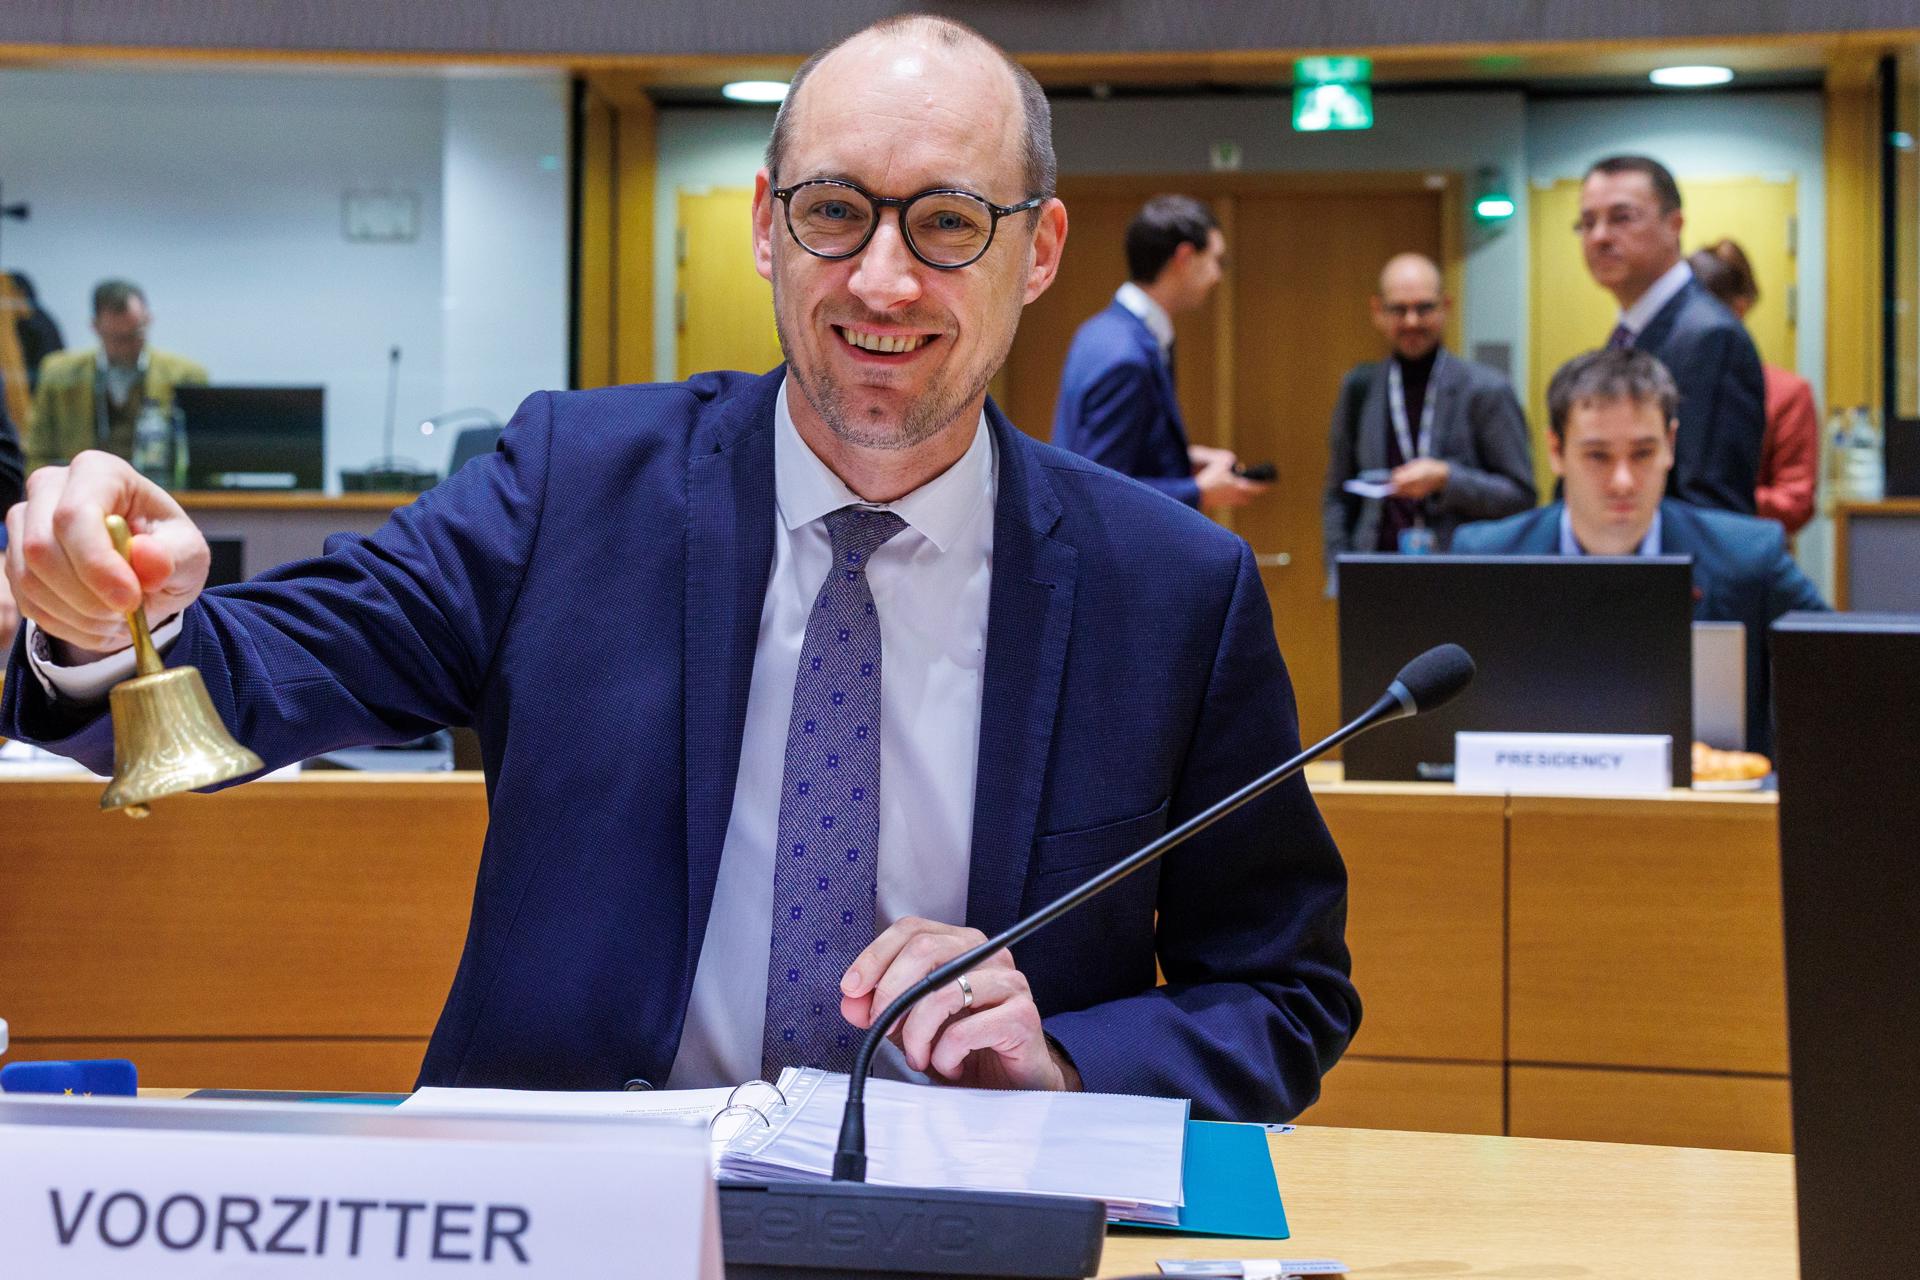 El ministro de Finanzas belga, Peter Van Peteghem, anuncia el comienzo de la reunión de ministros de Economía y Finanzas de la UE este martes en Bruselas. EFE/EPA/OLIVIER MATTHYS